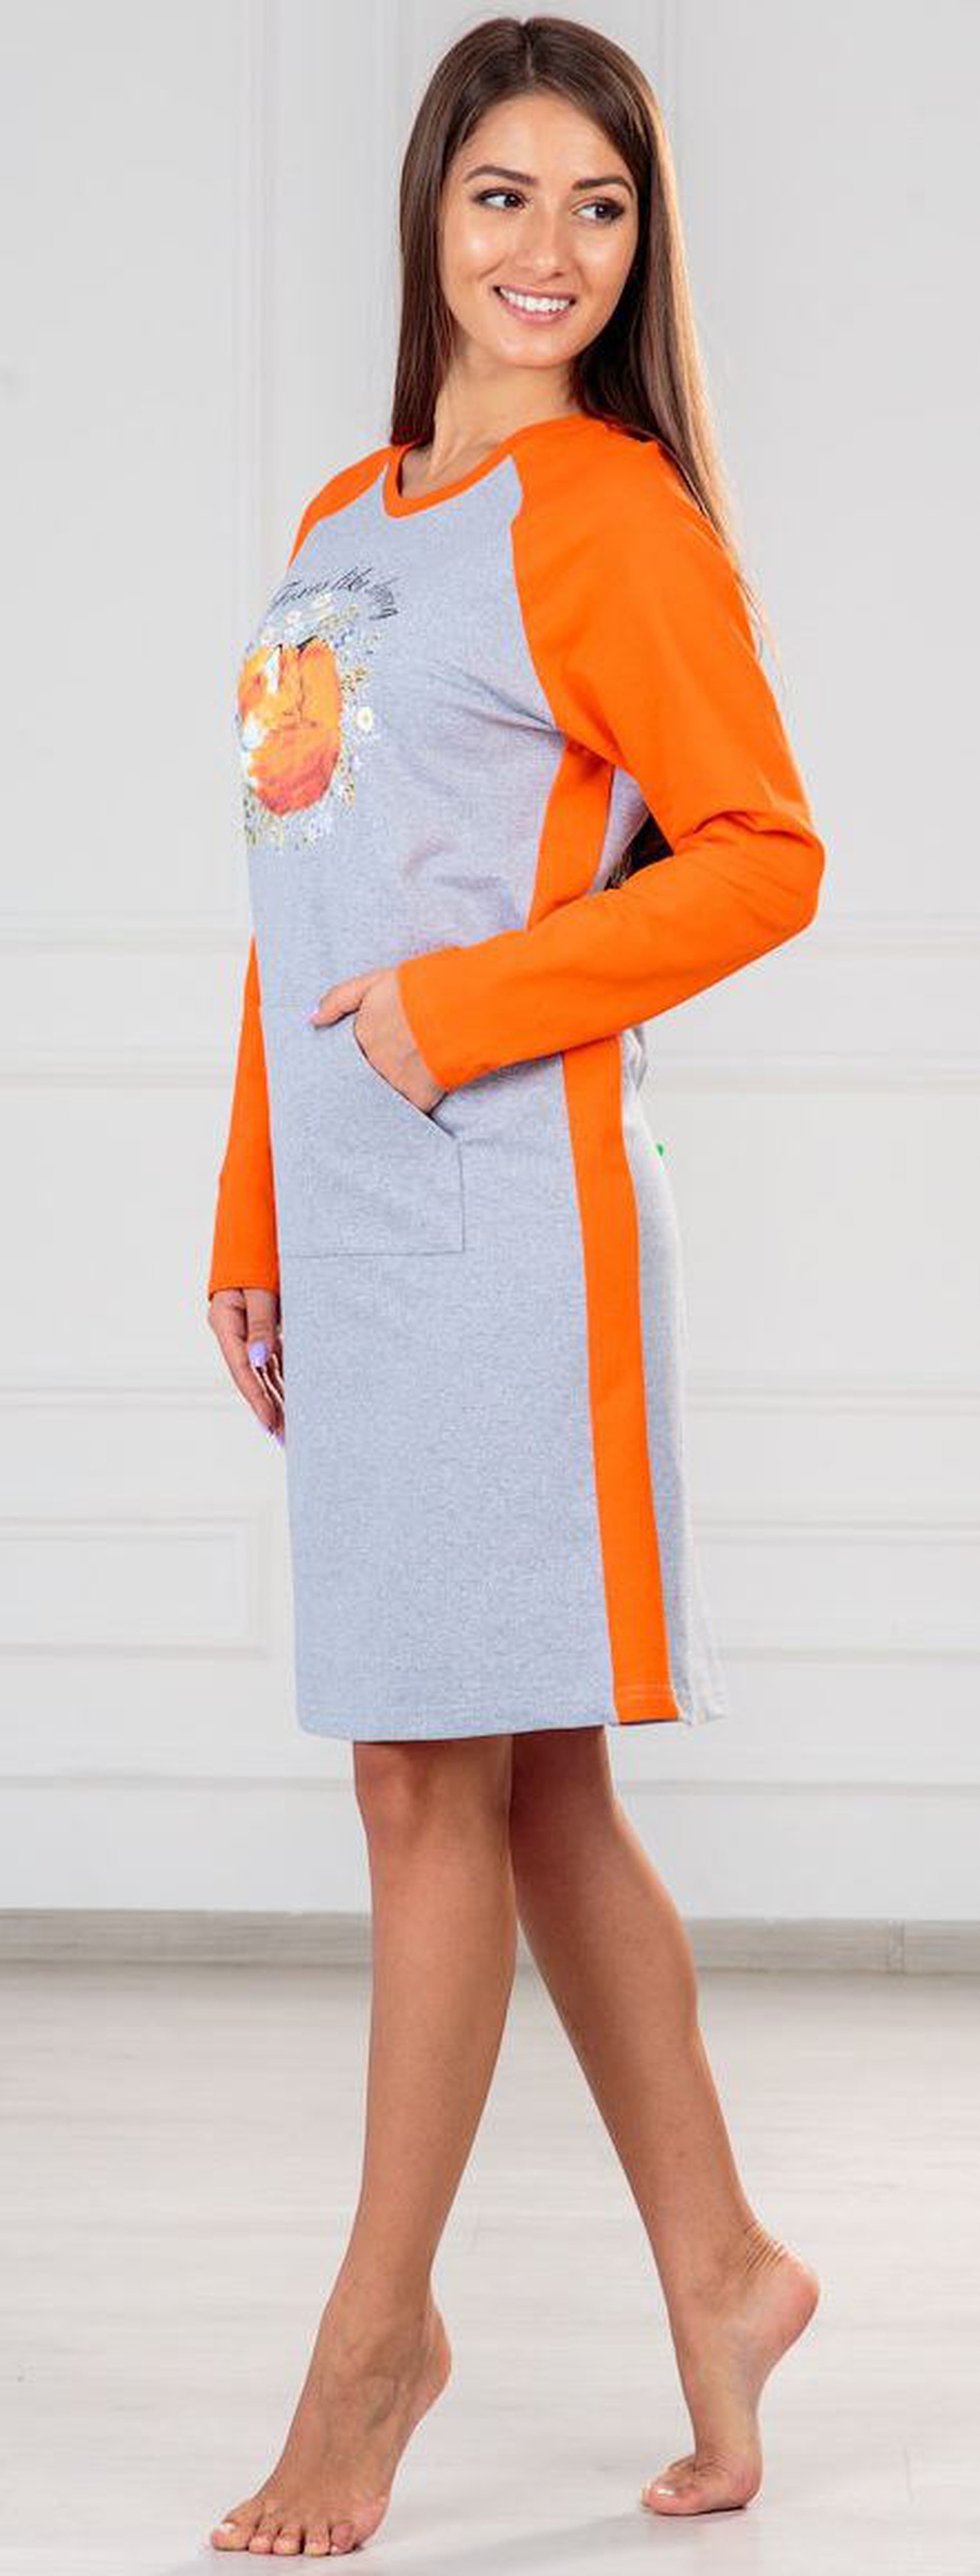 Платье ModaRU Лиса (50) оранжевый/серый меланж фото